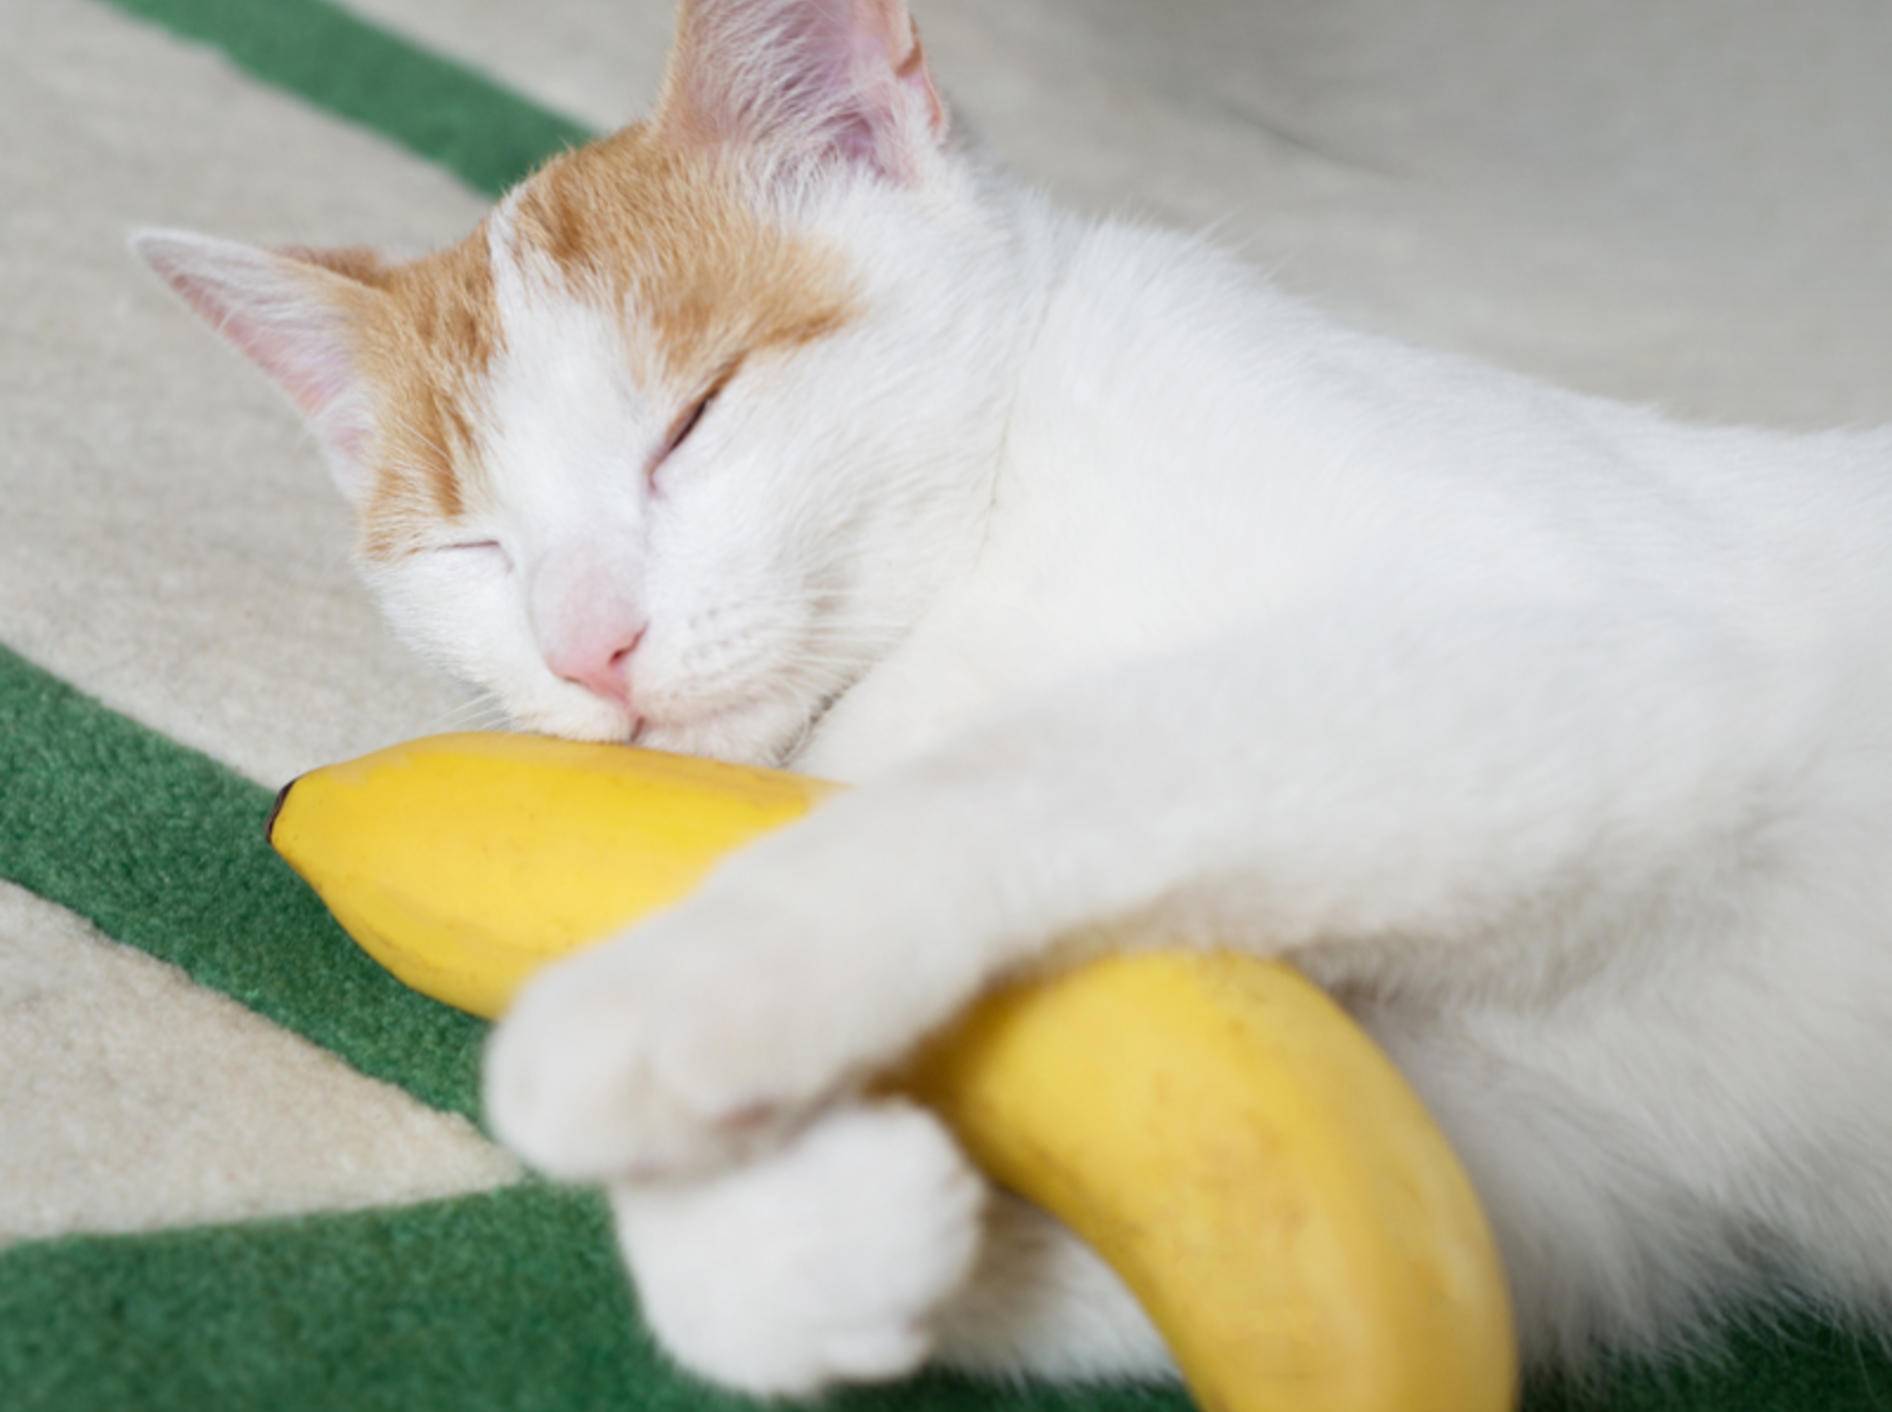 Sind Bananen für Katzen giftig? - Bild: Shutterstock / pp1